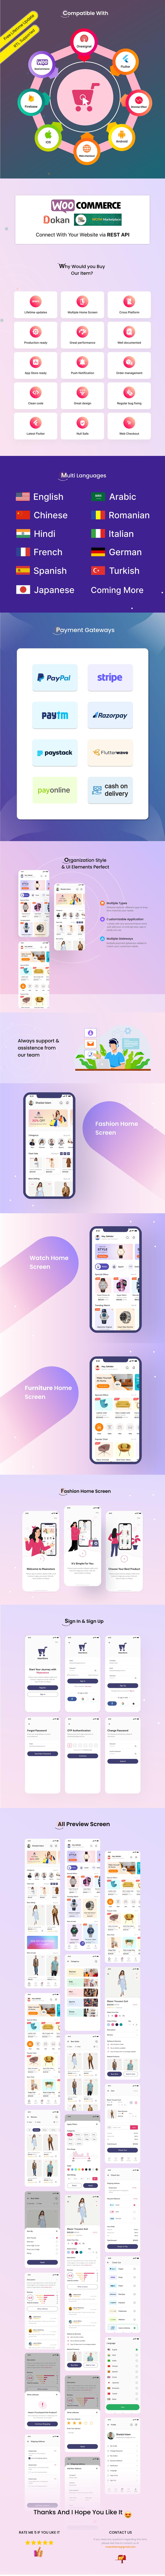 MaanStore WooCommerce - Flutter eCommerce Full App - 7